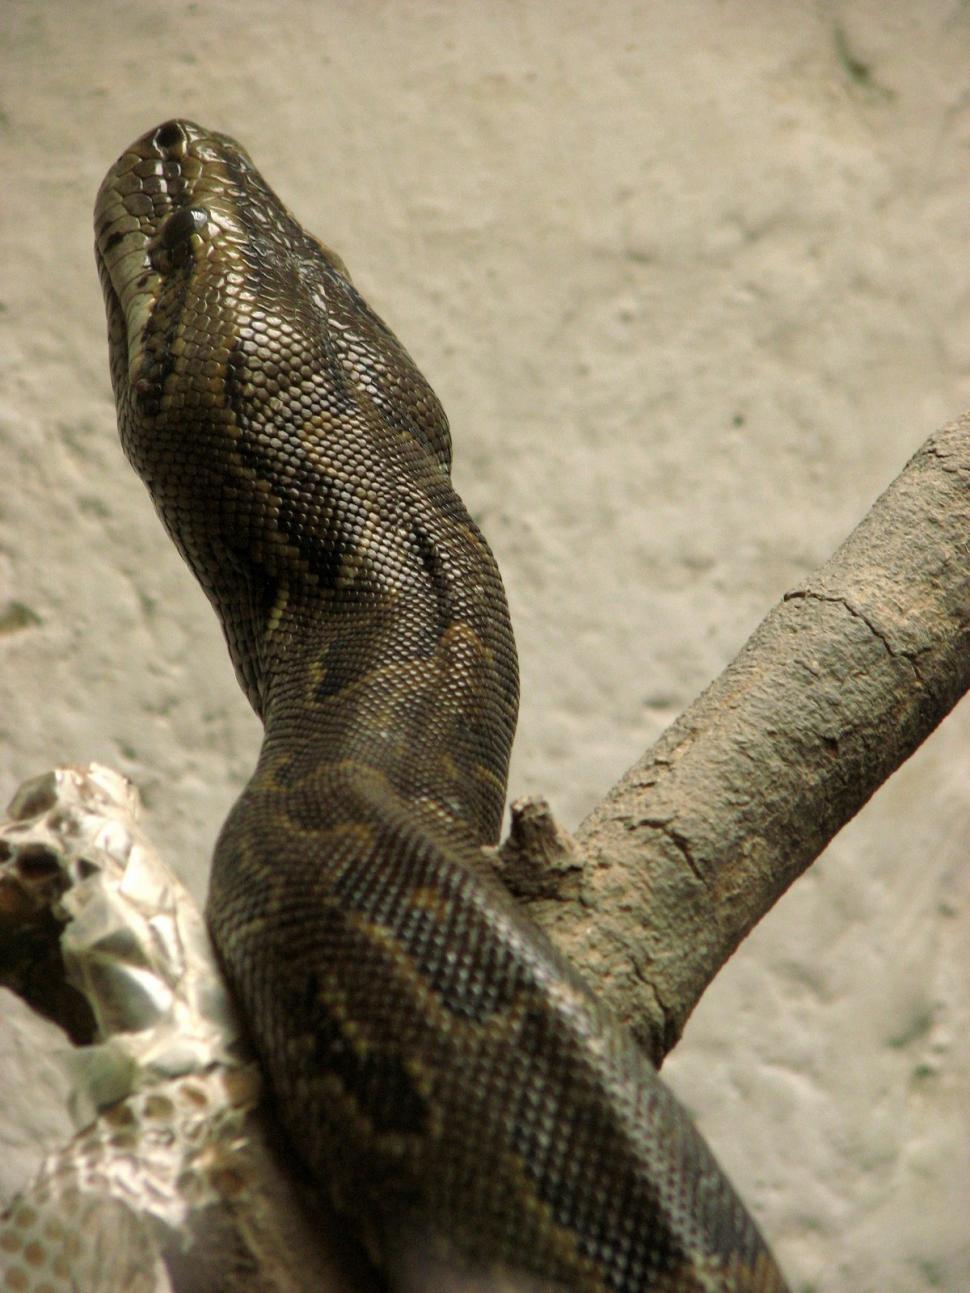 Free Image of Snake 